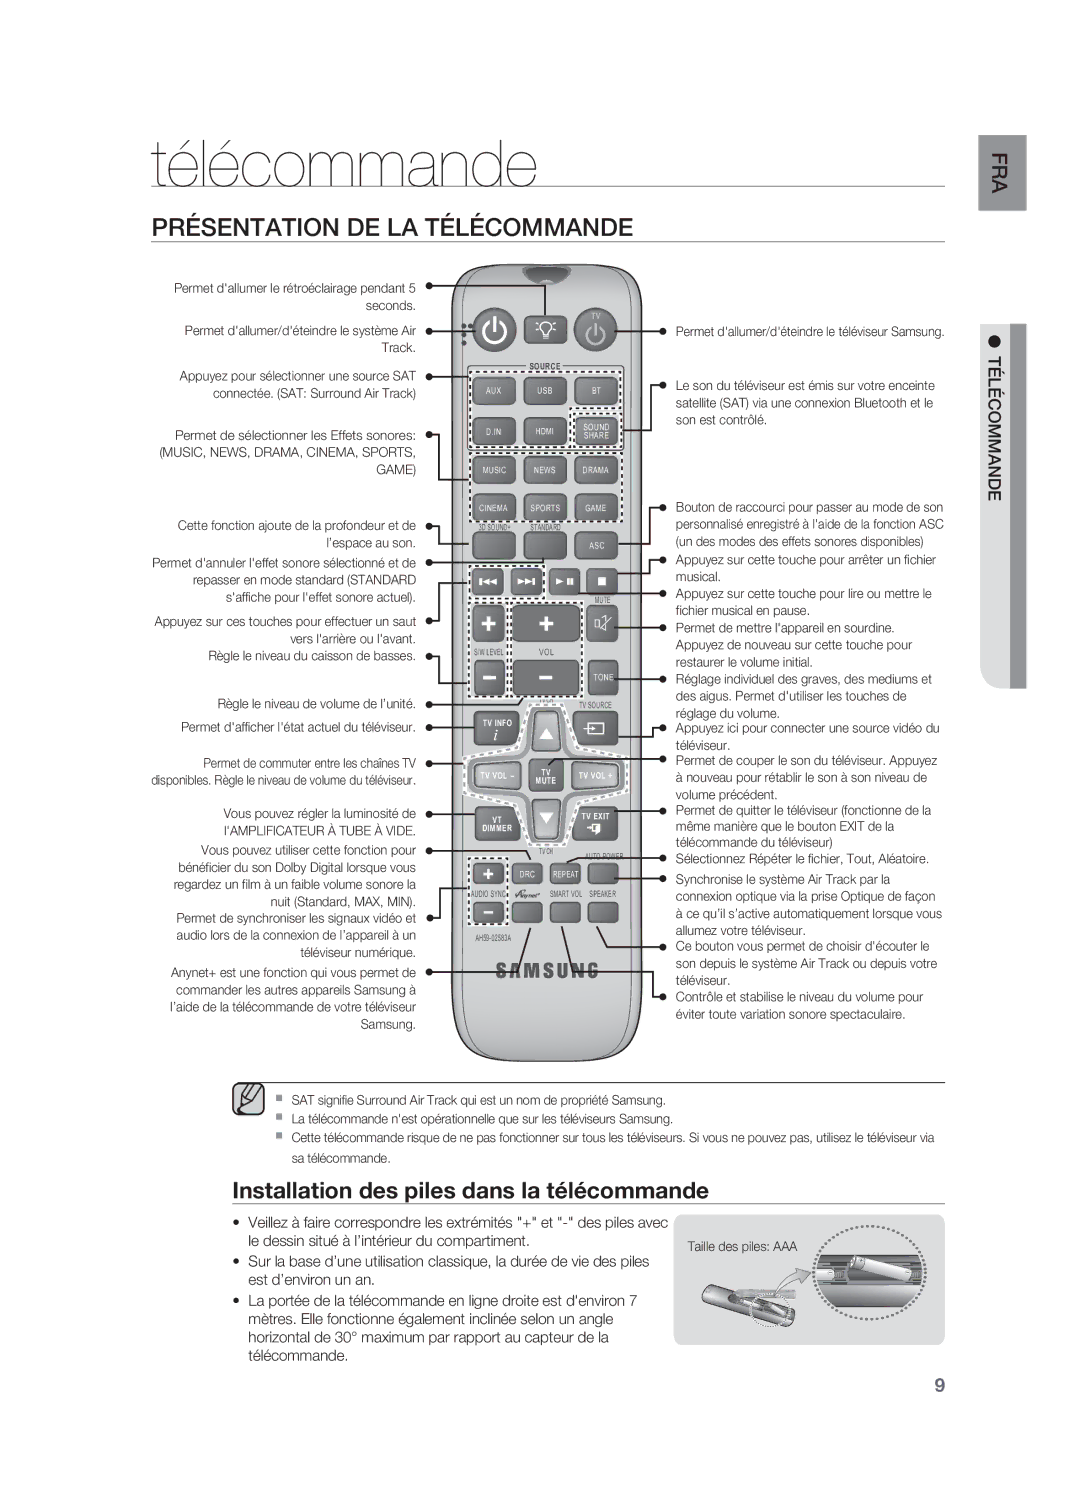 Samsung HW-F850/ZF manual Présentation DE LA Télécommande, Installation des piles dans la télécommande 